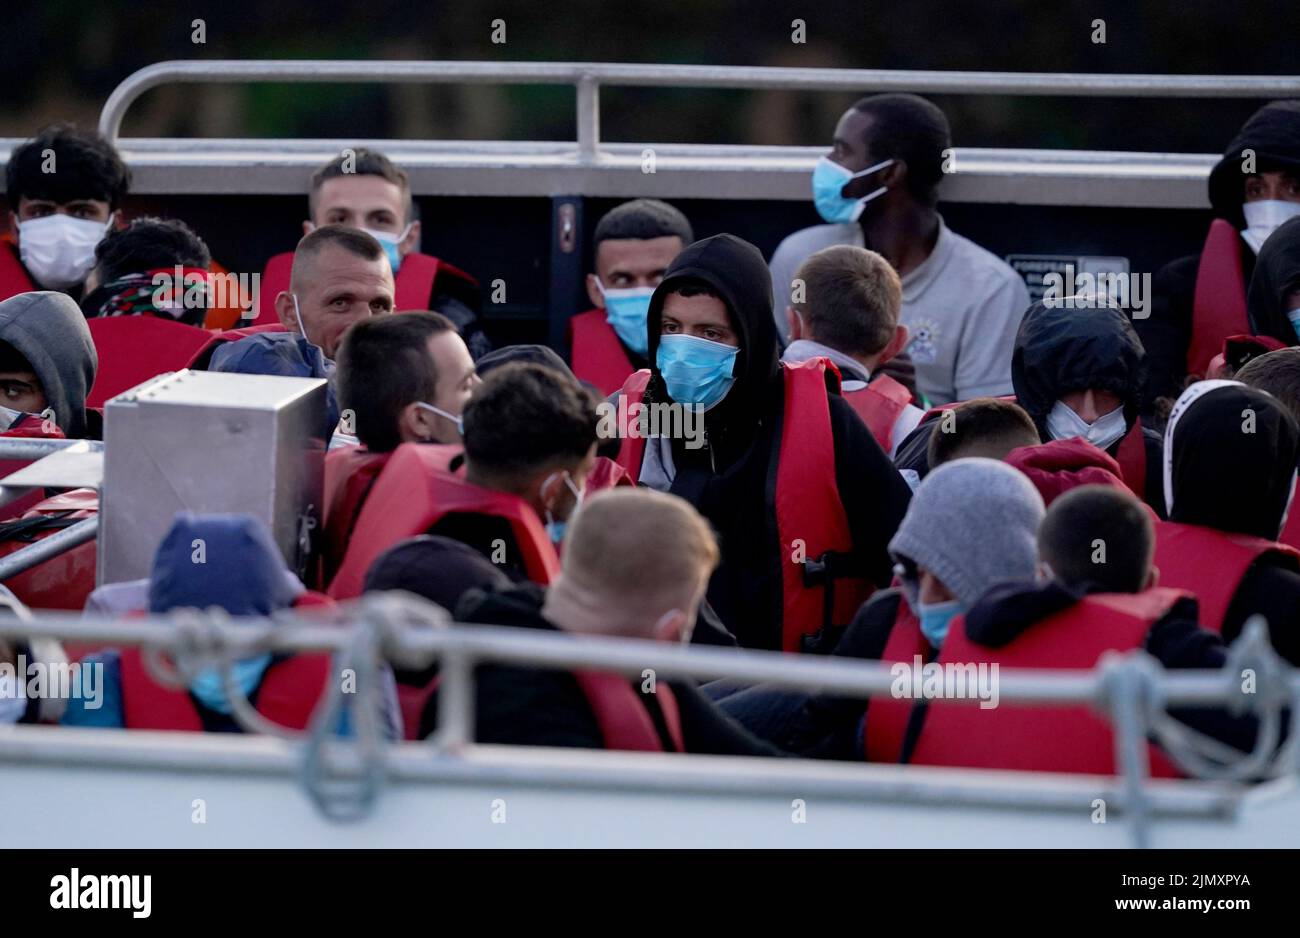 Un grupo de personas que se cree que son migrantes son llevadas a Dover, Kent, a bordo de un barco de la Fuerza Fronteriza, después de un pequeño incidente en el Canal de la Mancha. Fecha de la foto: Lunes 8 de agosto de 2022. Foto de stock